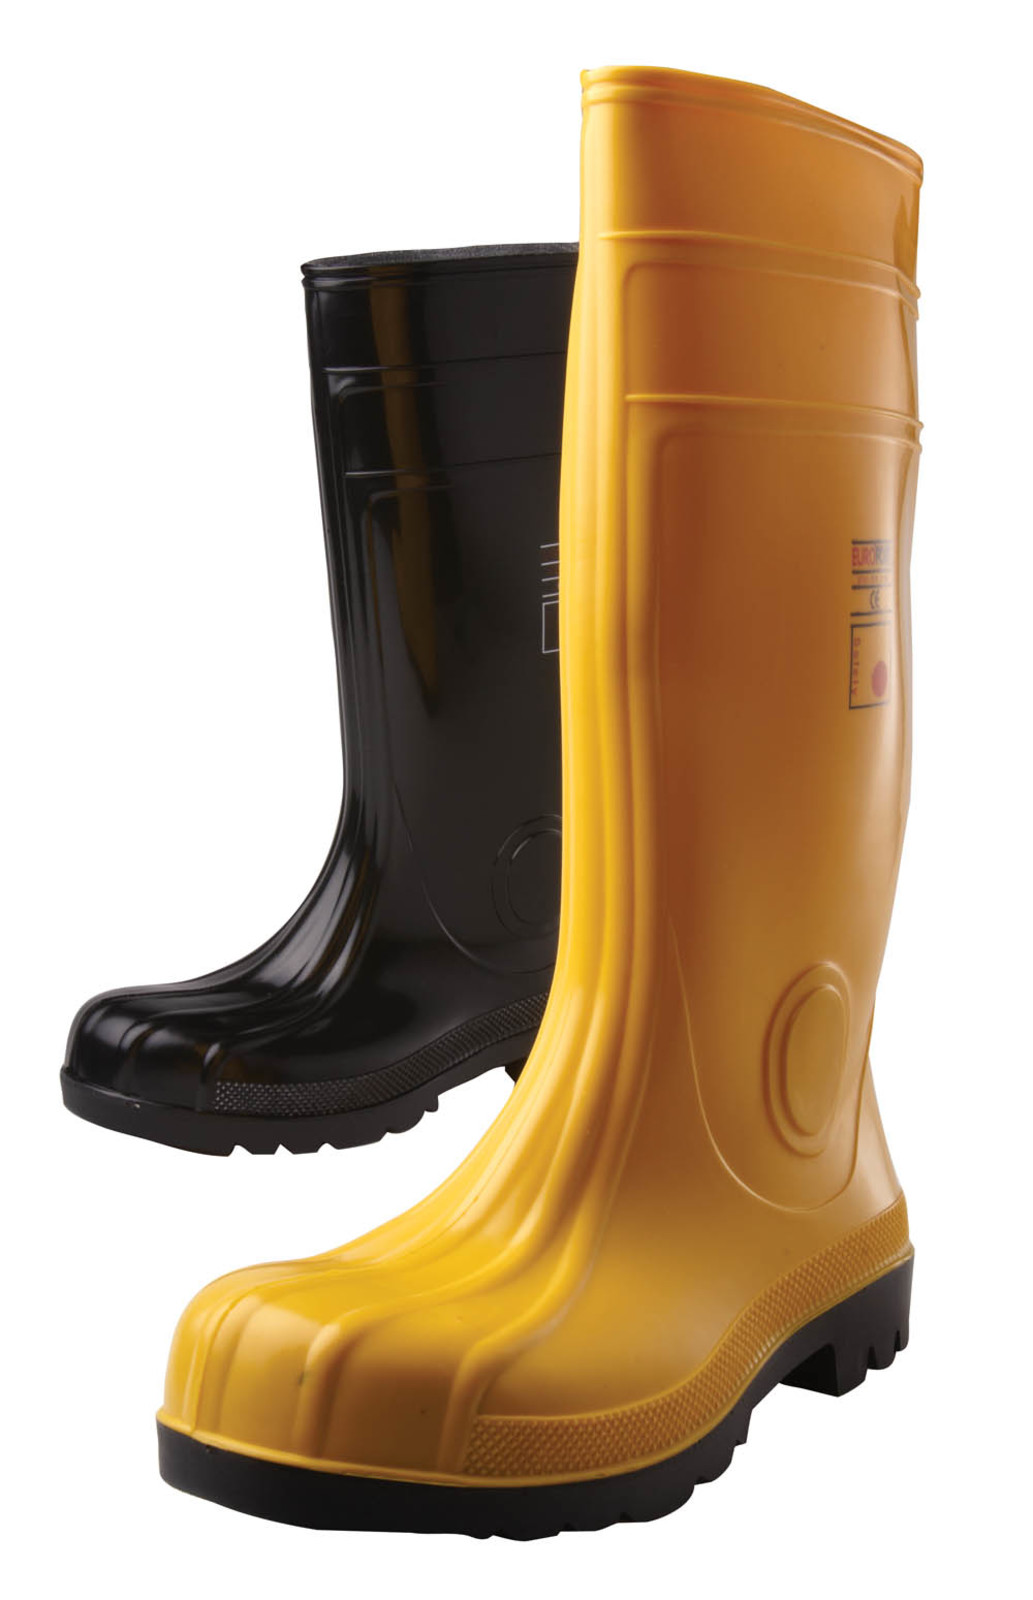 Gumáky Boots Eurofort  S5 - veľkosť: 40, farba: žltá